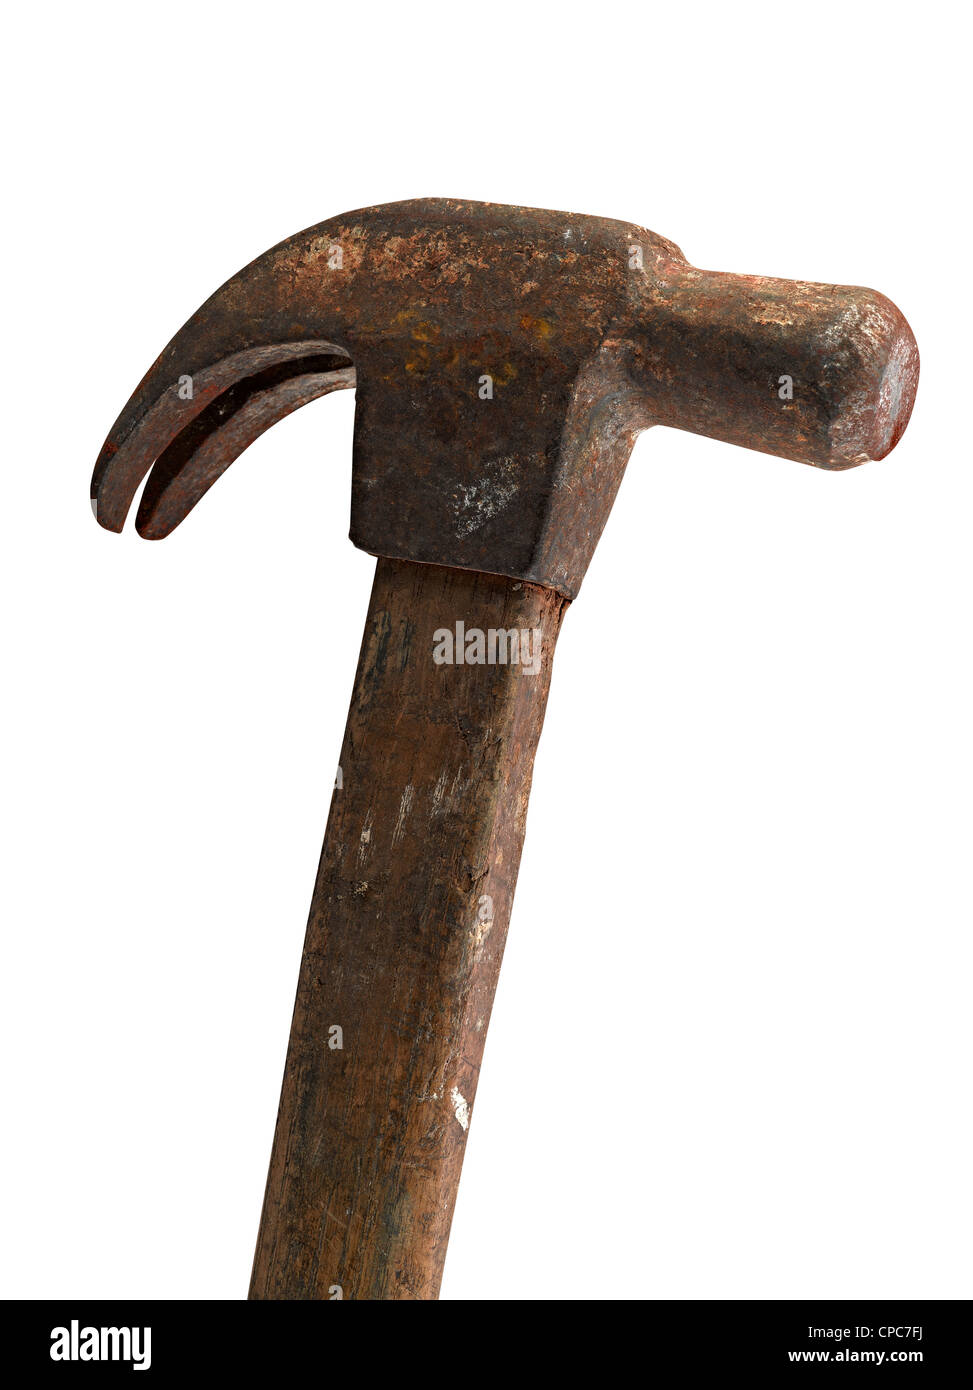 Le gros marteau de pour les travaux lourds, clipping path Photo Stock -  Alamy